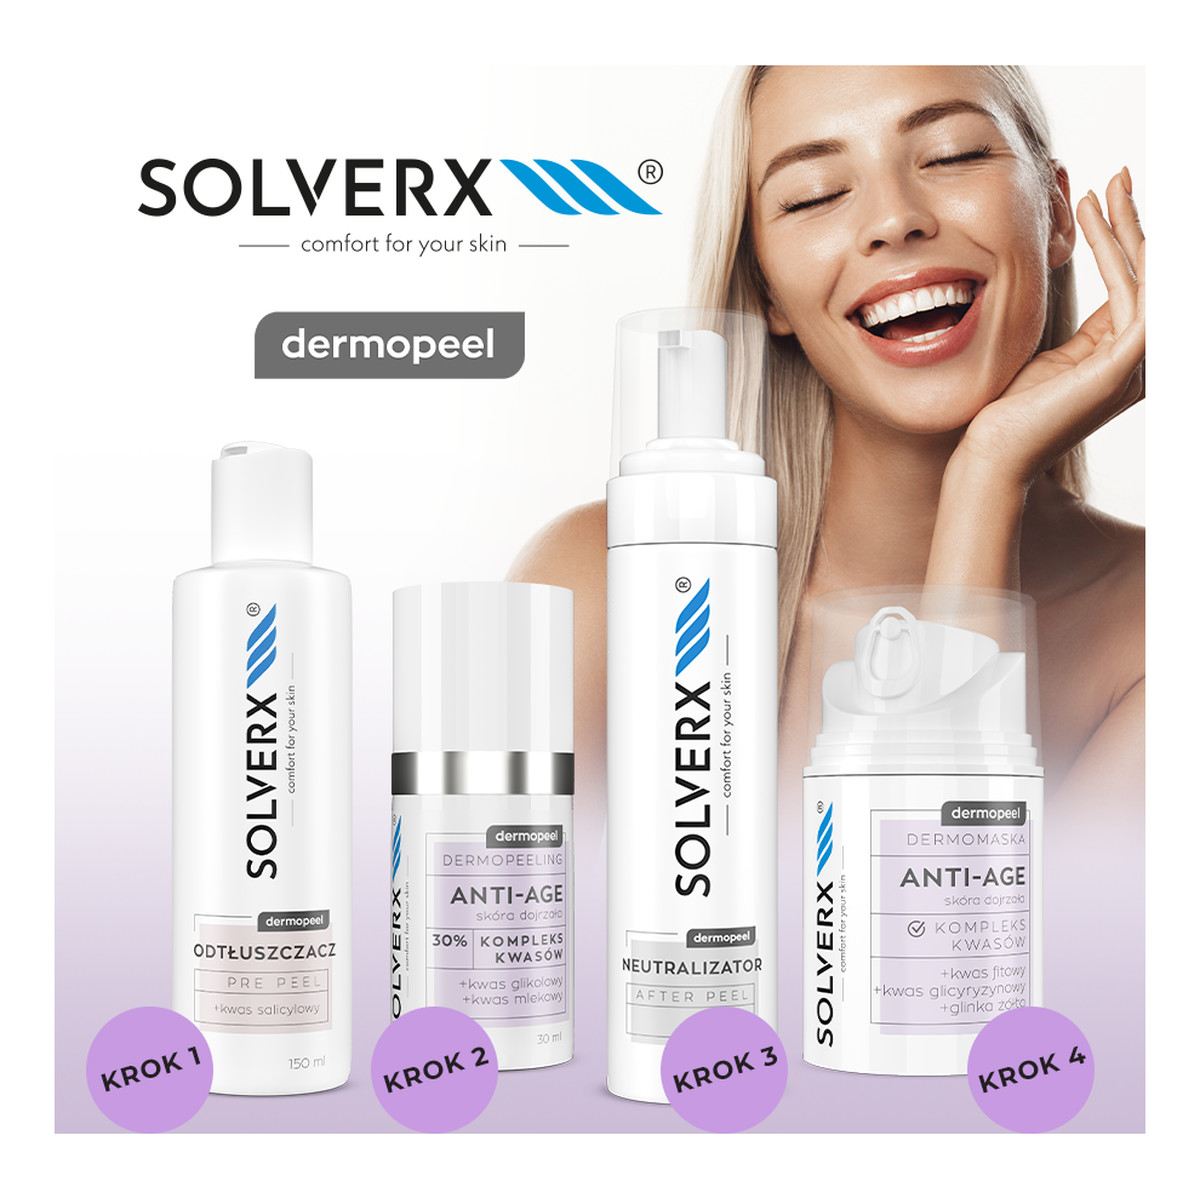 Solverx Dermopeel Dermomaska Vit C z kompleksem kwasów - do skóry matowej i szarej 50ml